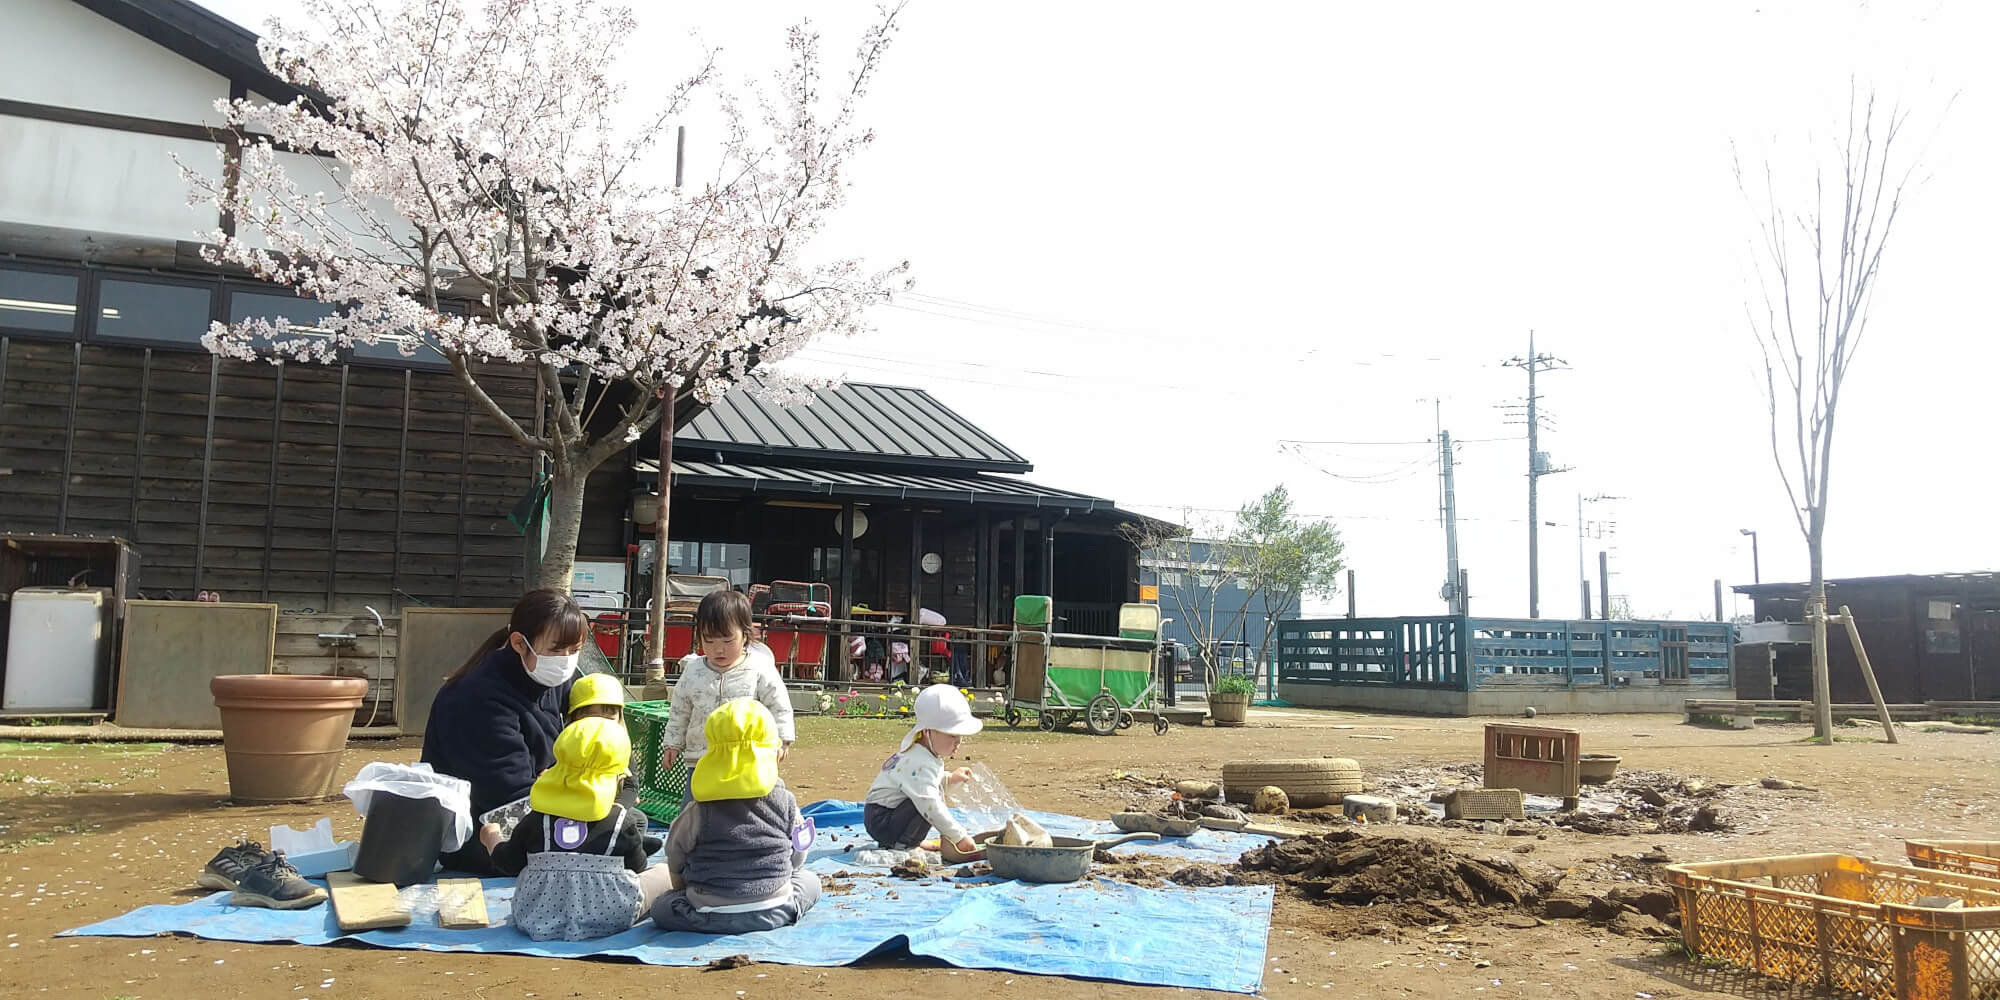 桜の木の下でお花見をする子どもたち